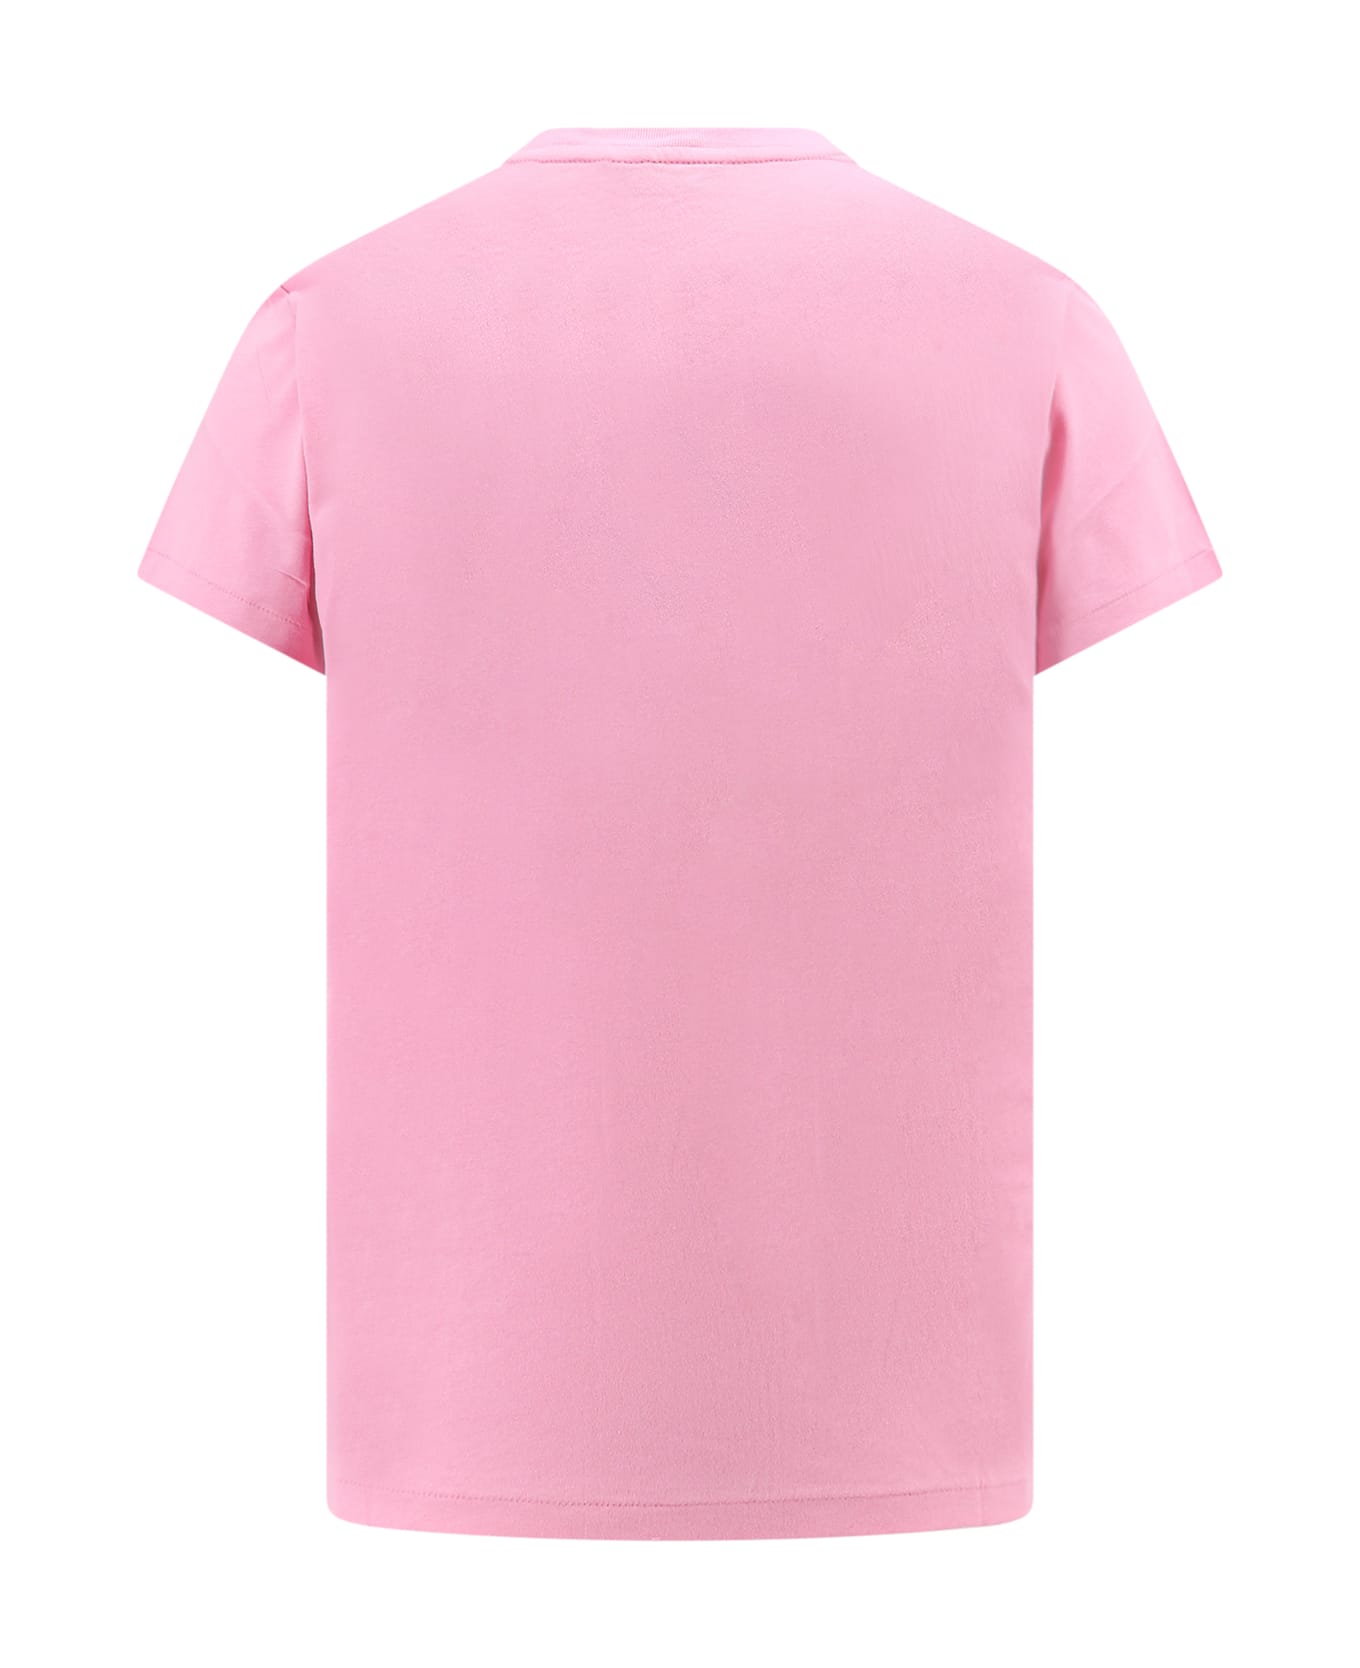 Ralph Lauren T-shirt - Course Pink